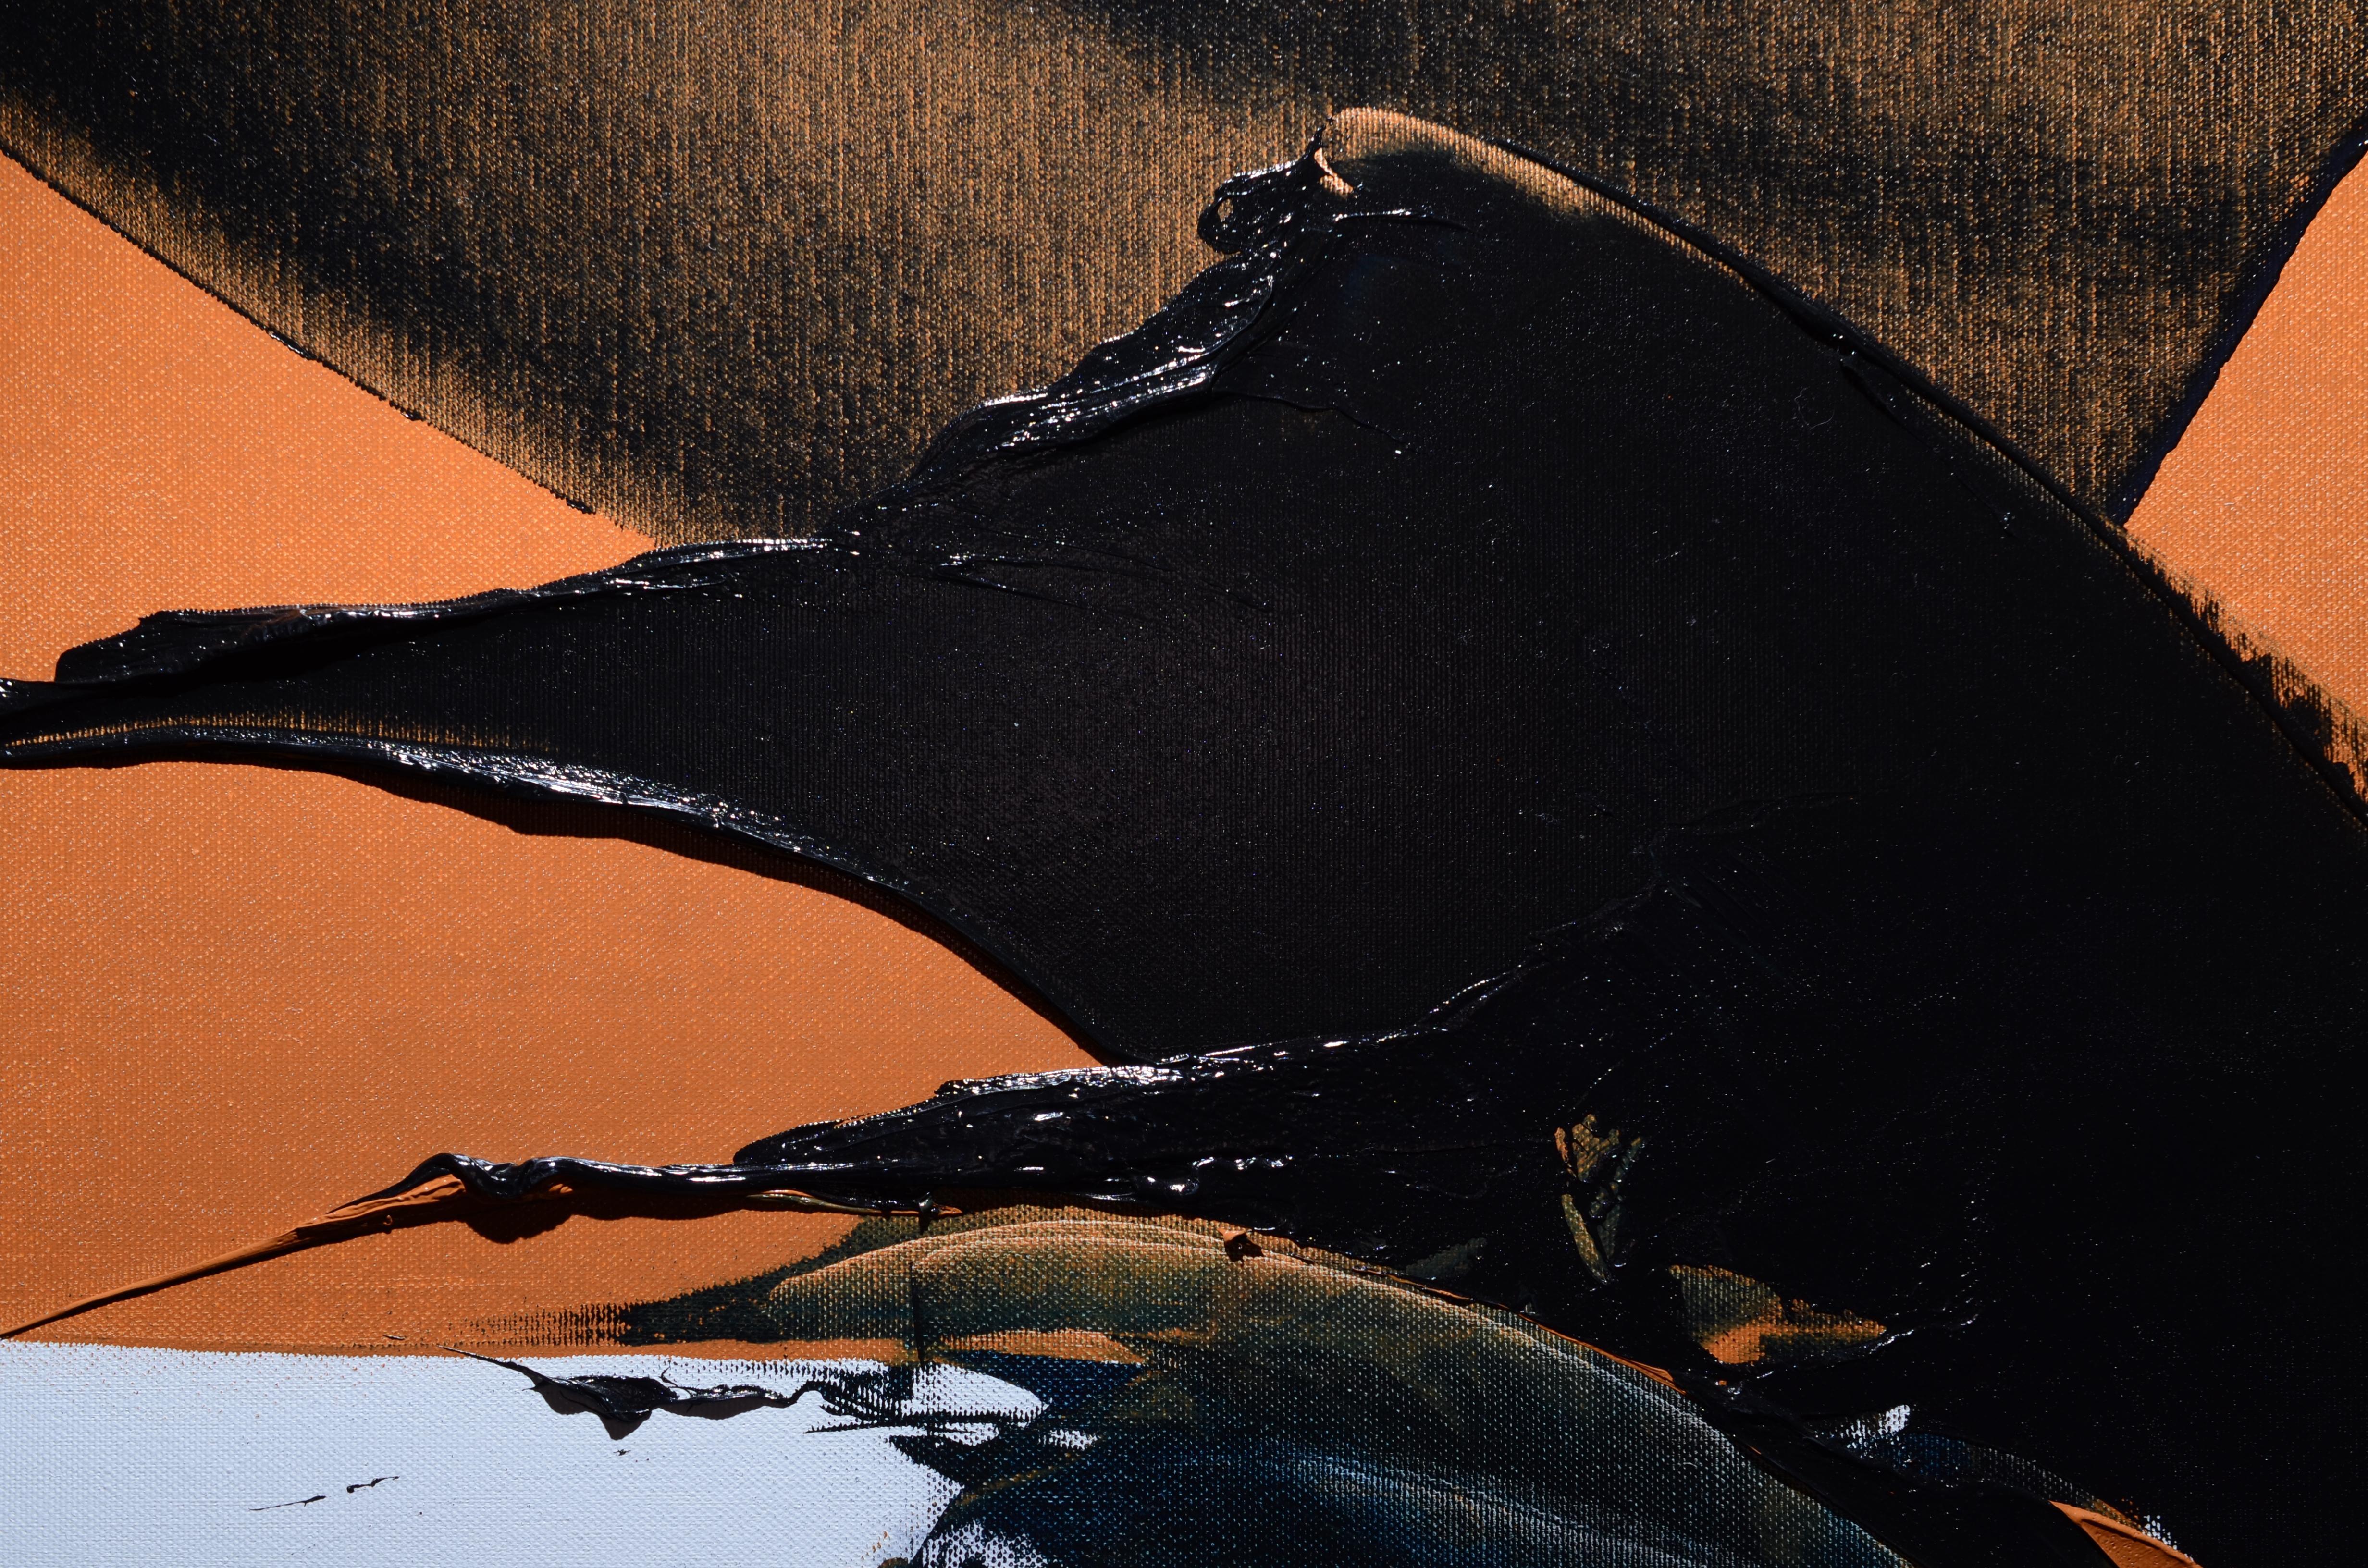 Dieses lyrische, abstrakte Gemälde von Jean Soyer scheint einen Kampf zwischen zwei Wellen im Vordergrund zu zeigen, mit viel Materie und Reliefs und einem Gefühl von gebrochener Symmetrie.  Die Nüchternheit des Hintergrunds, sowohl in Form als auch